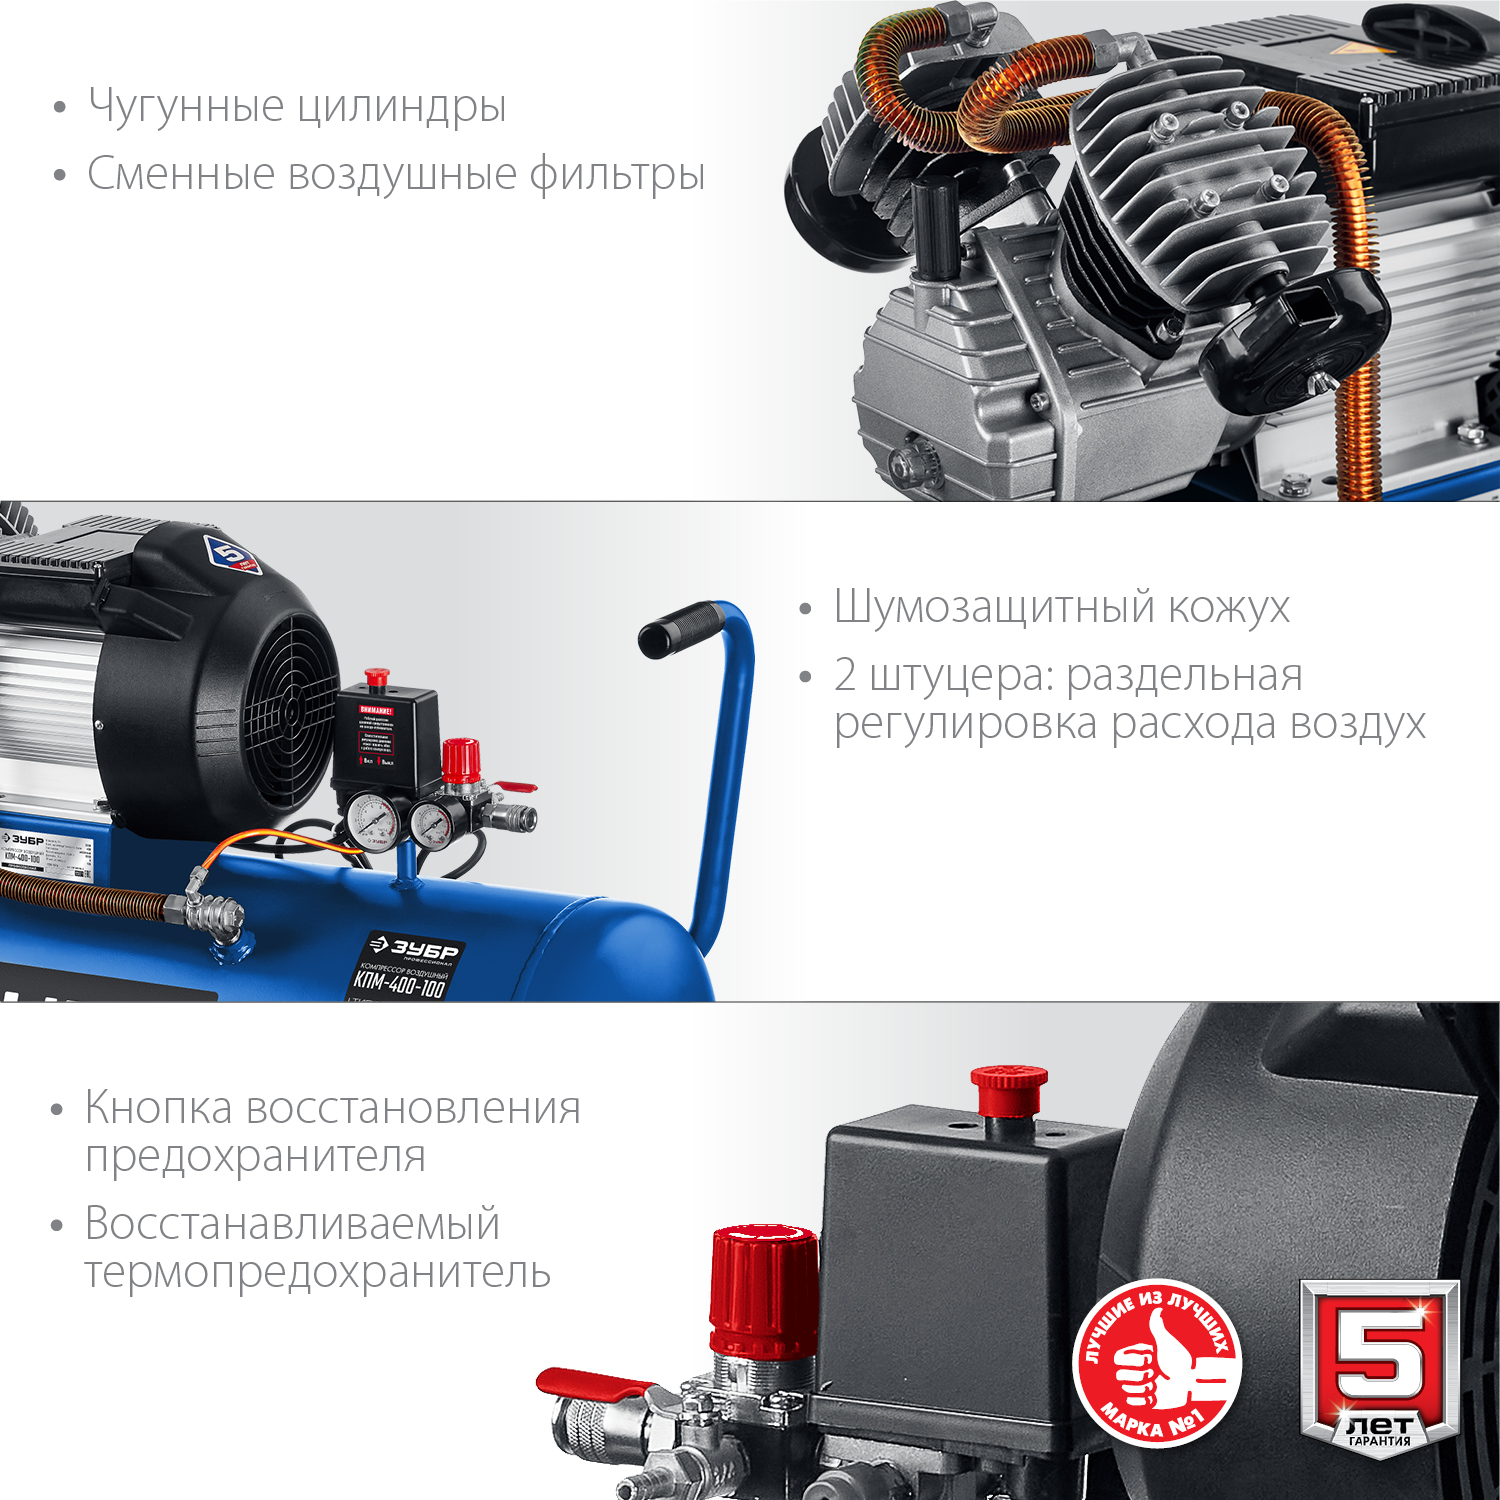 ЗУБР 400 л/мин, 100 л, 2200 Вт, масляный компрессор, Профессионал (КПМ-400-100)